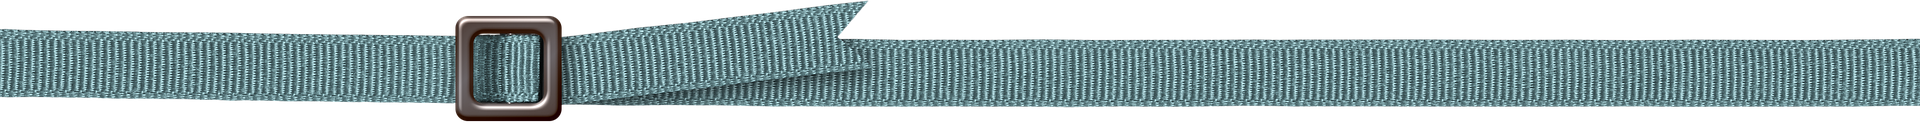 belt-line-separator-teal